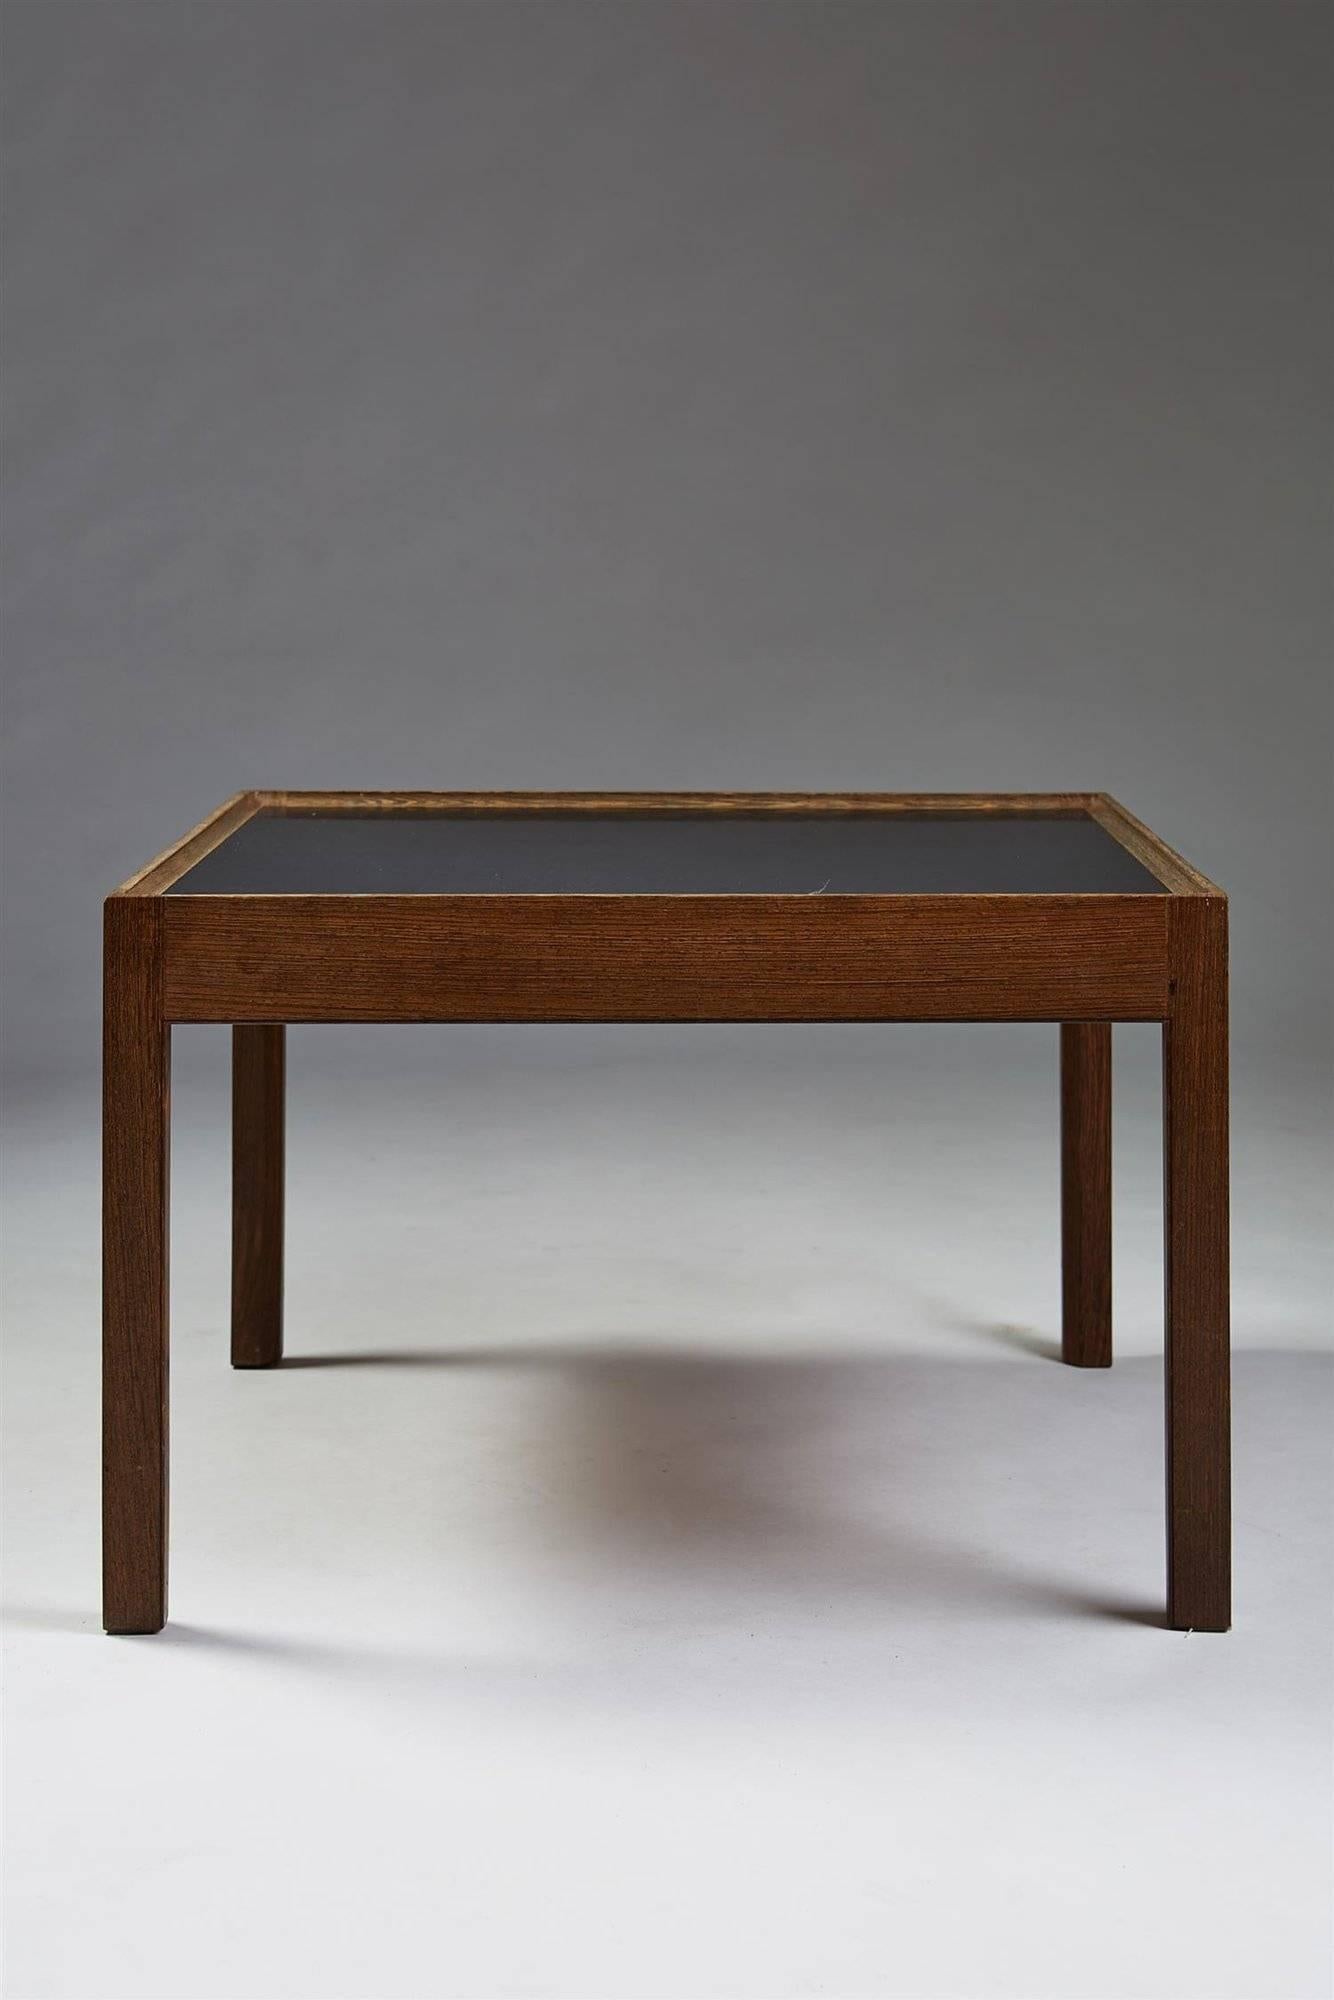 Occasional table designed by Erik Christian Sörensen for Bovirke, Denmark, 1960s. Wenge and black laminate.

Measures: H 45 cm/ 17 3/4